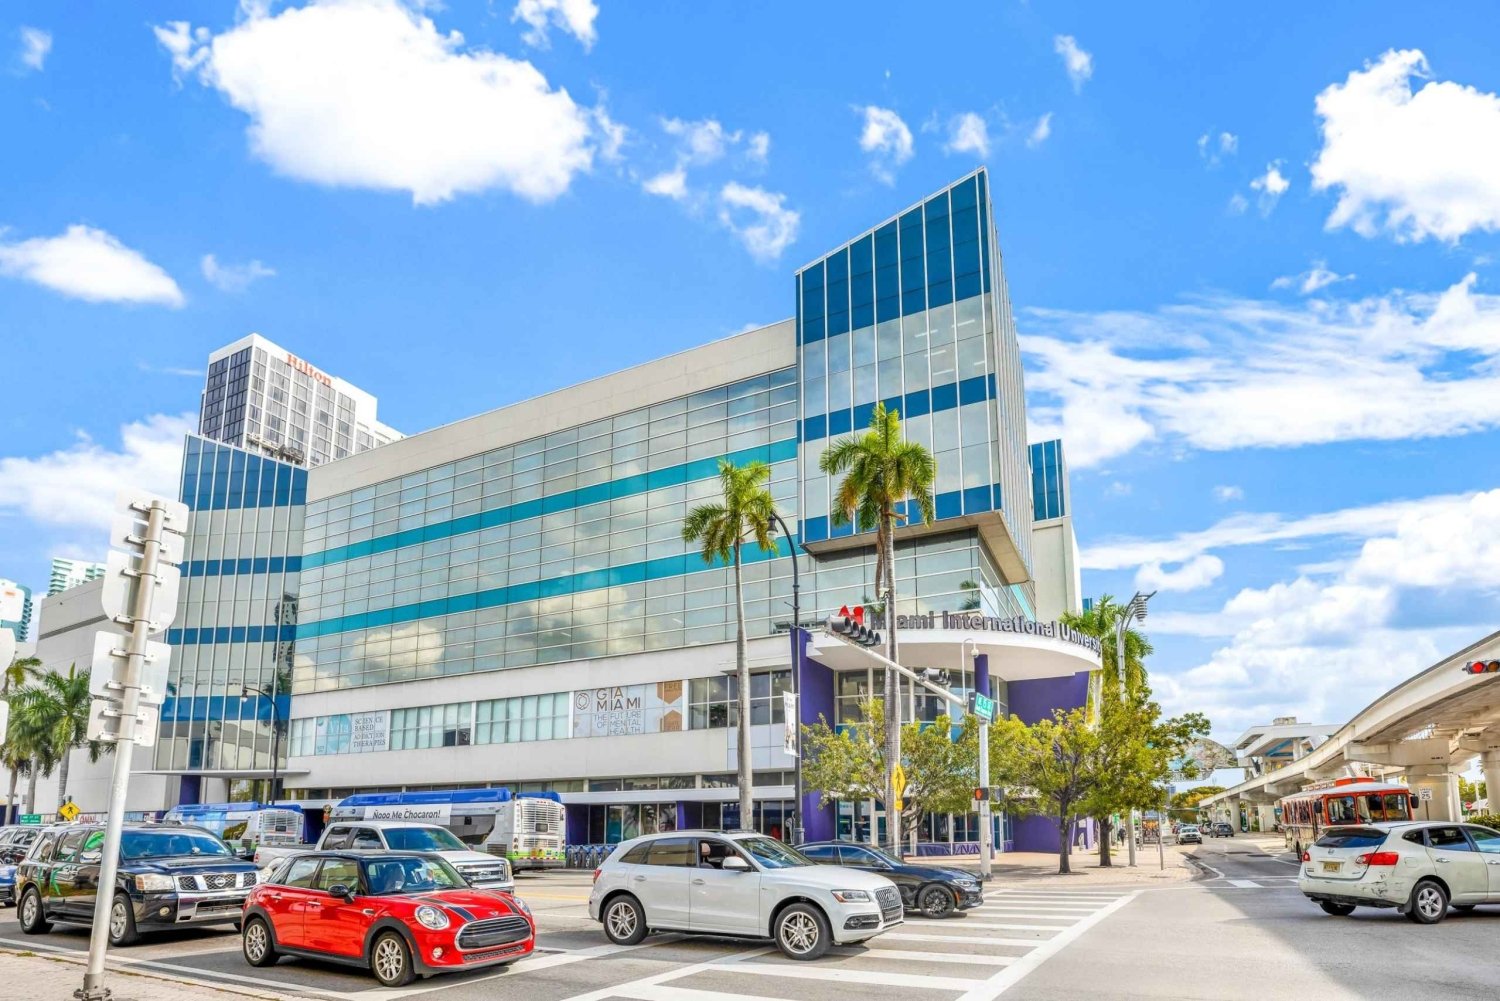 Miami: Acesso ao lounge da companhia de cruzeiros e depósito de bagagens